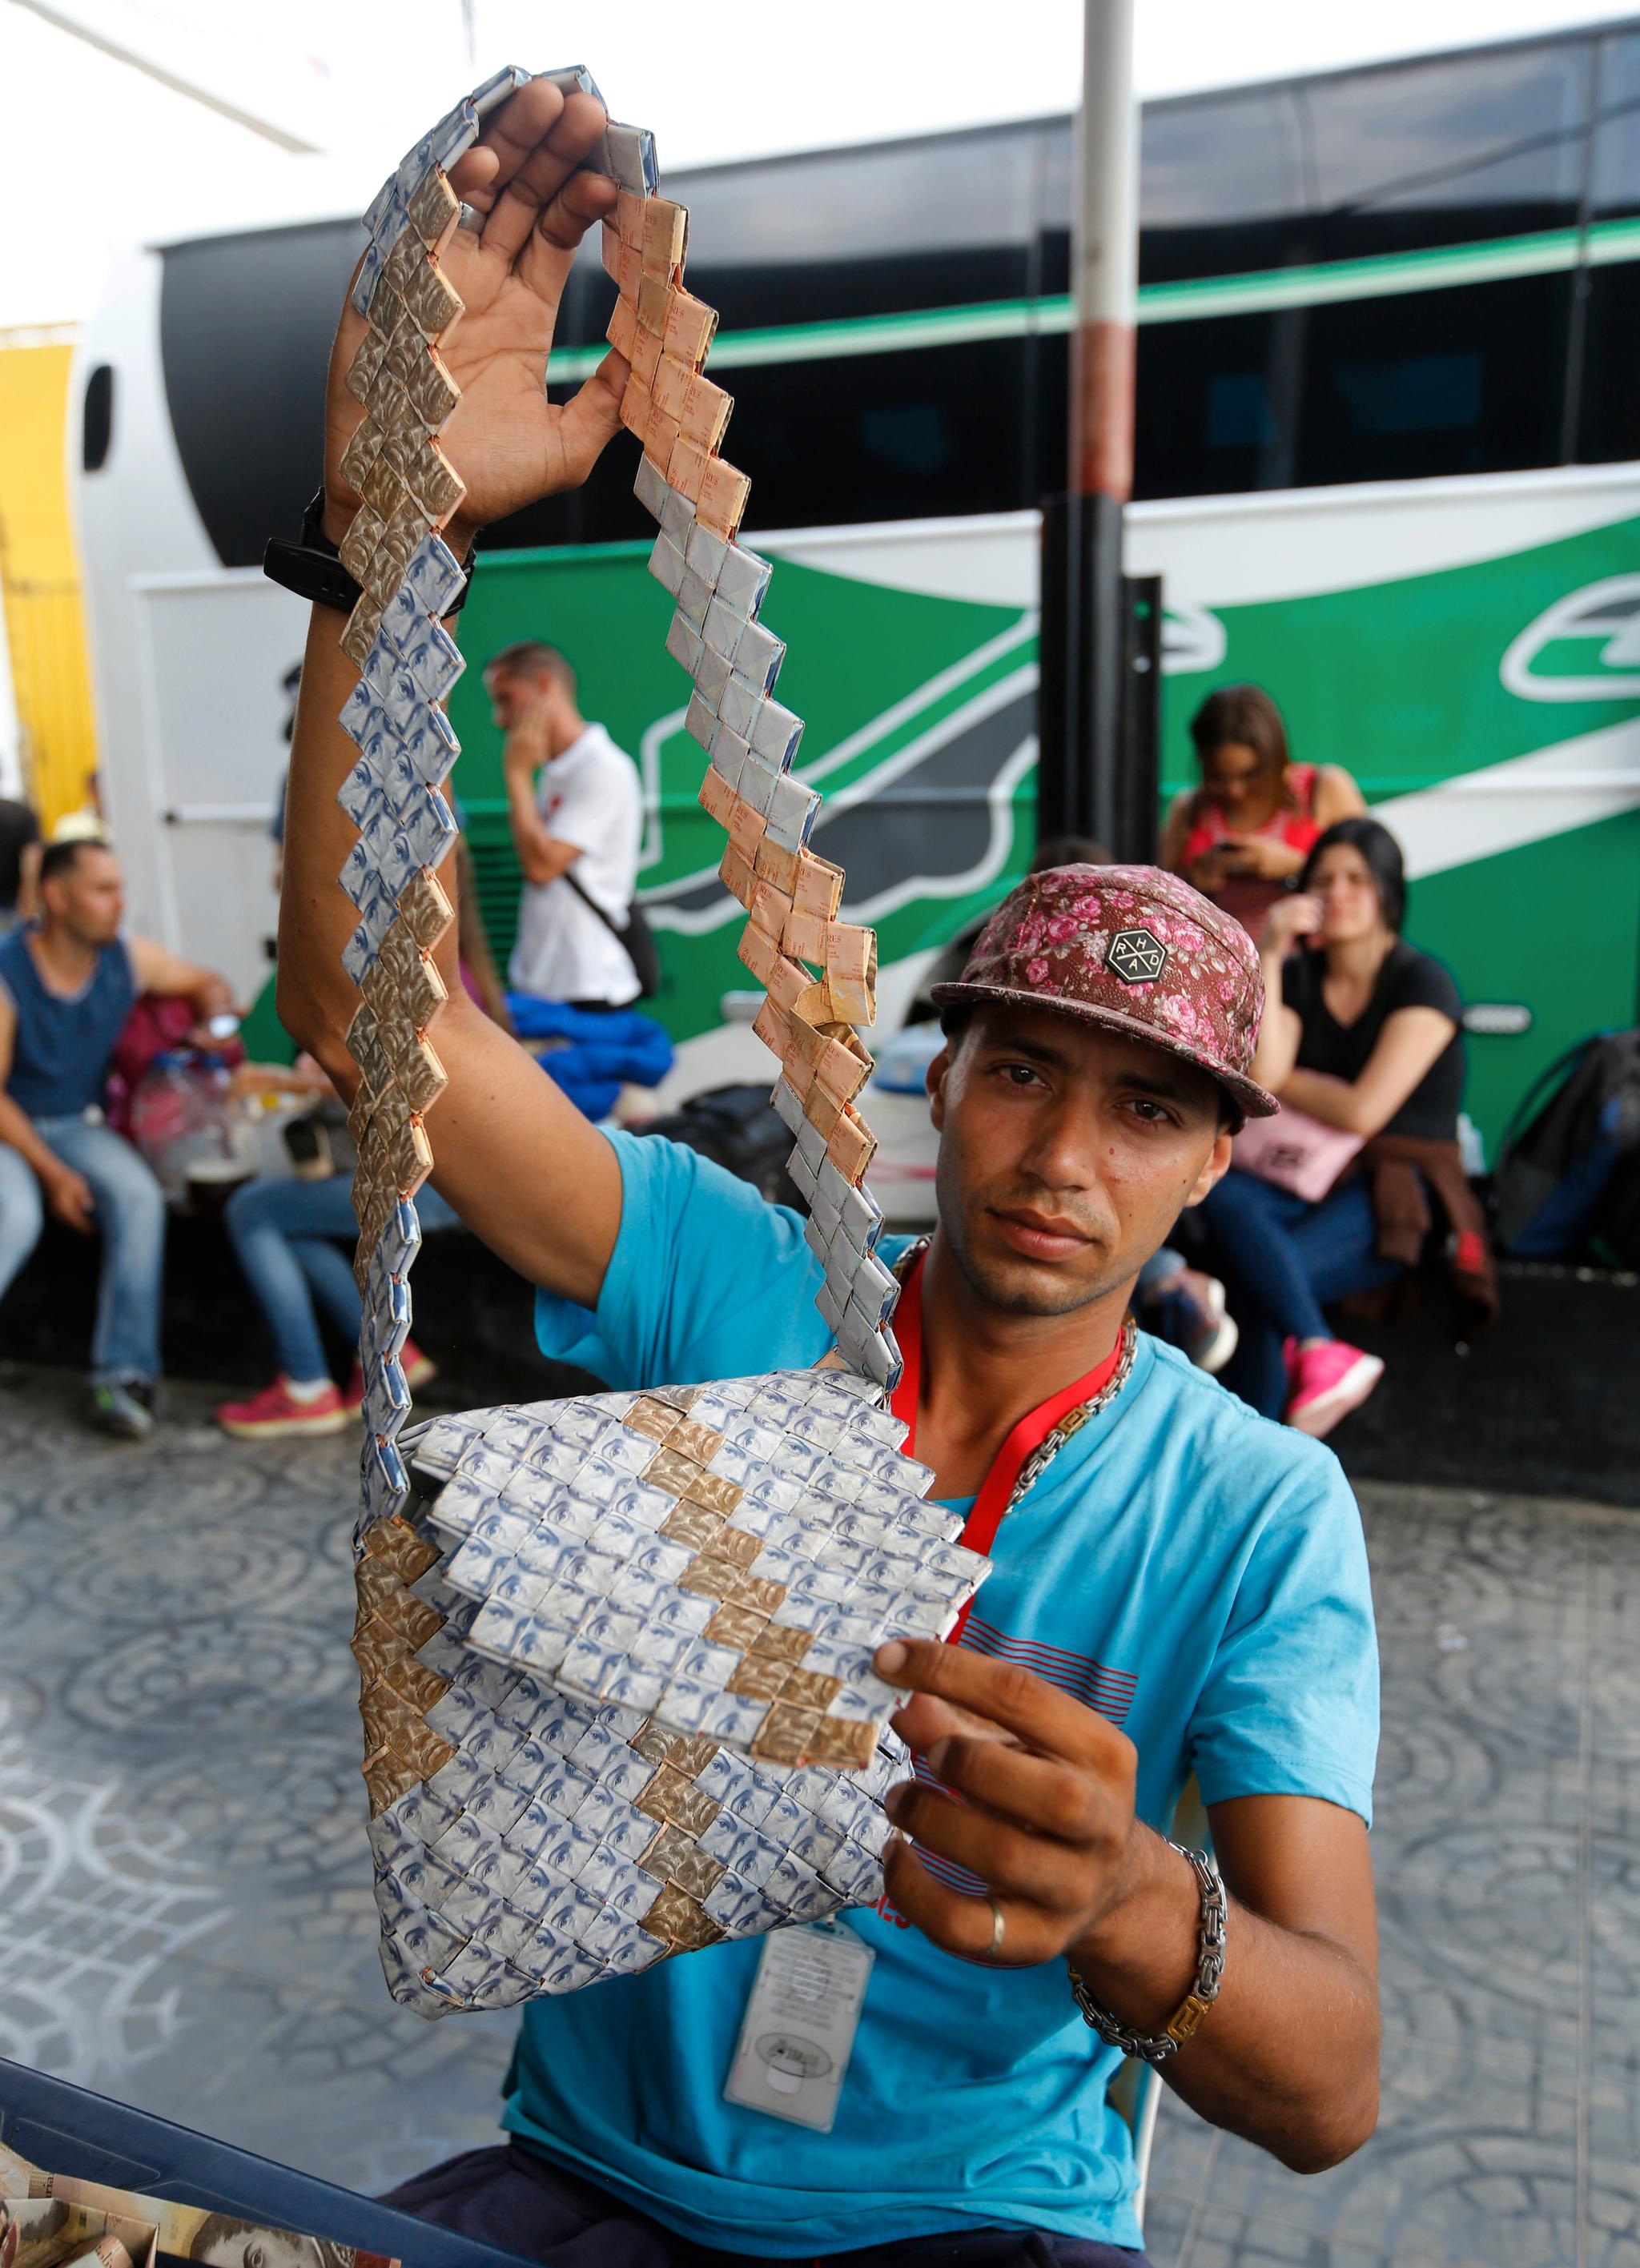 Richard Segovia bruker de venezuelanske bolivar-sedlene til å lage vesker. Han selger de på grensen mellom Venezuela og Colombia og får solgt veskene for mange ganger verdien av sedlene han brukte i produksjonen.